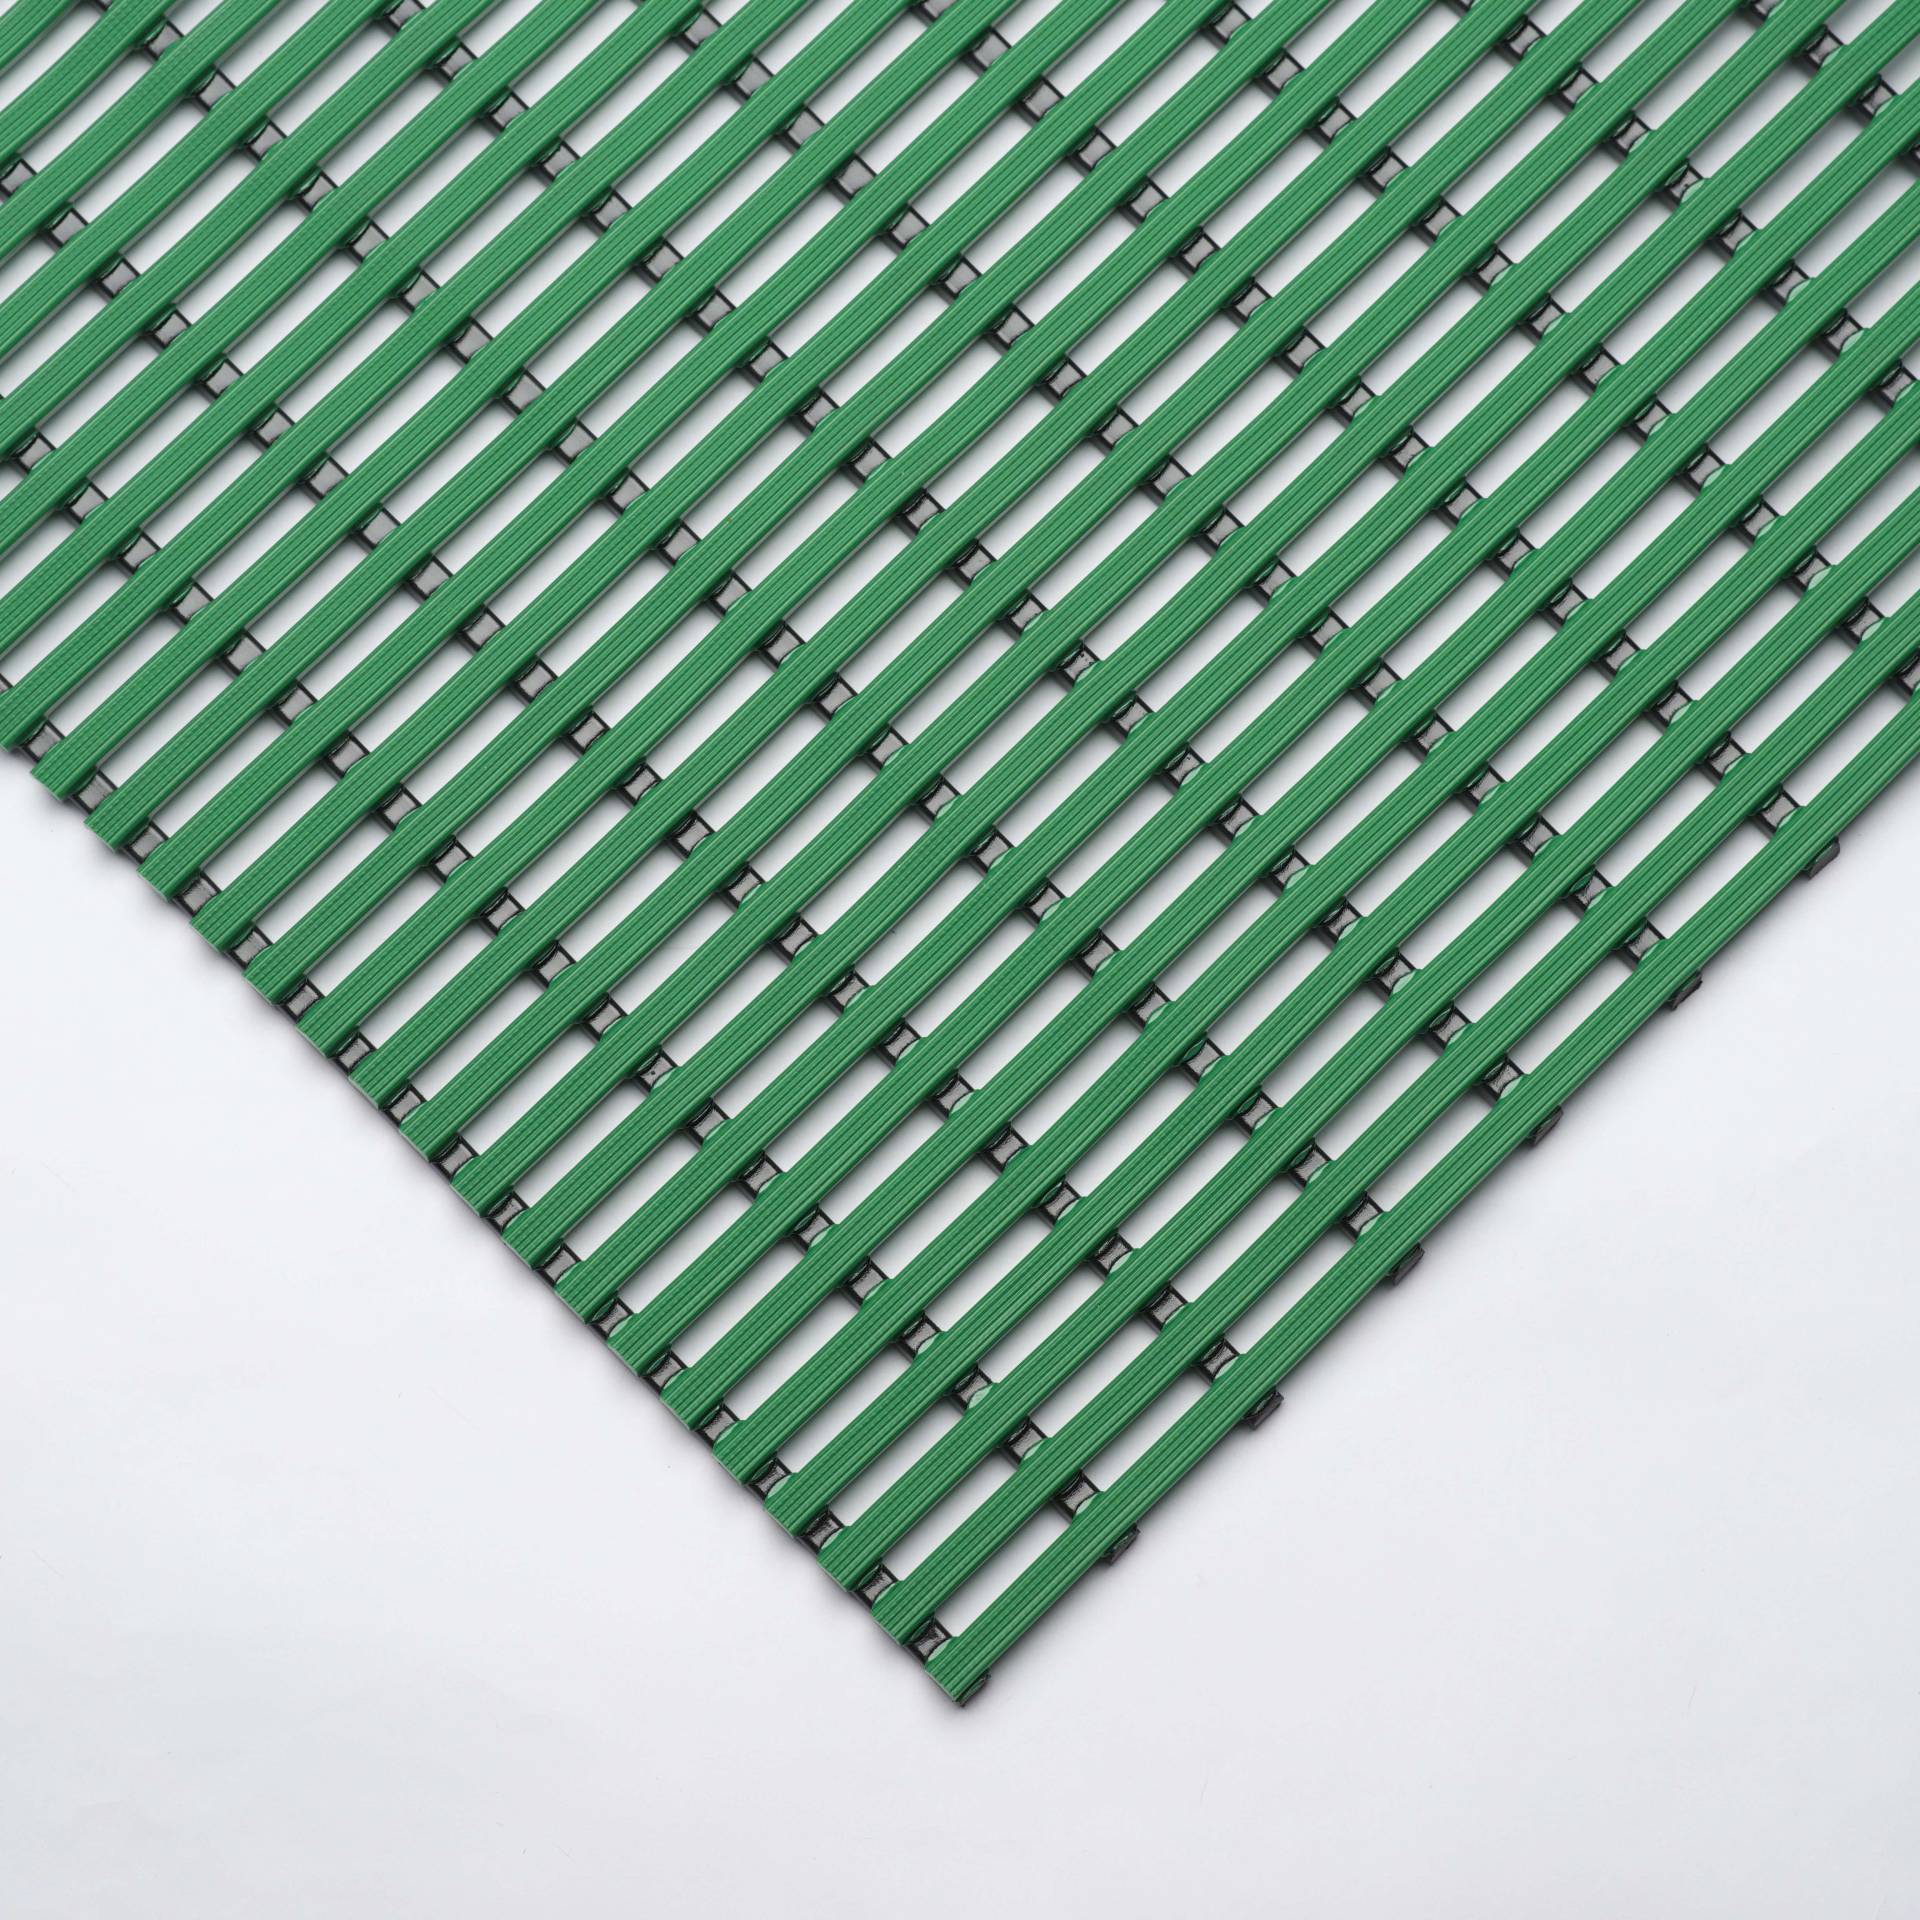 EHA Bädermatte für Nassraum, 80 cm, Grün von EHA